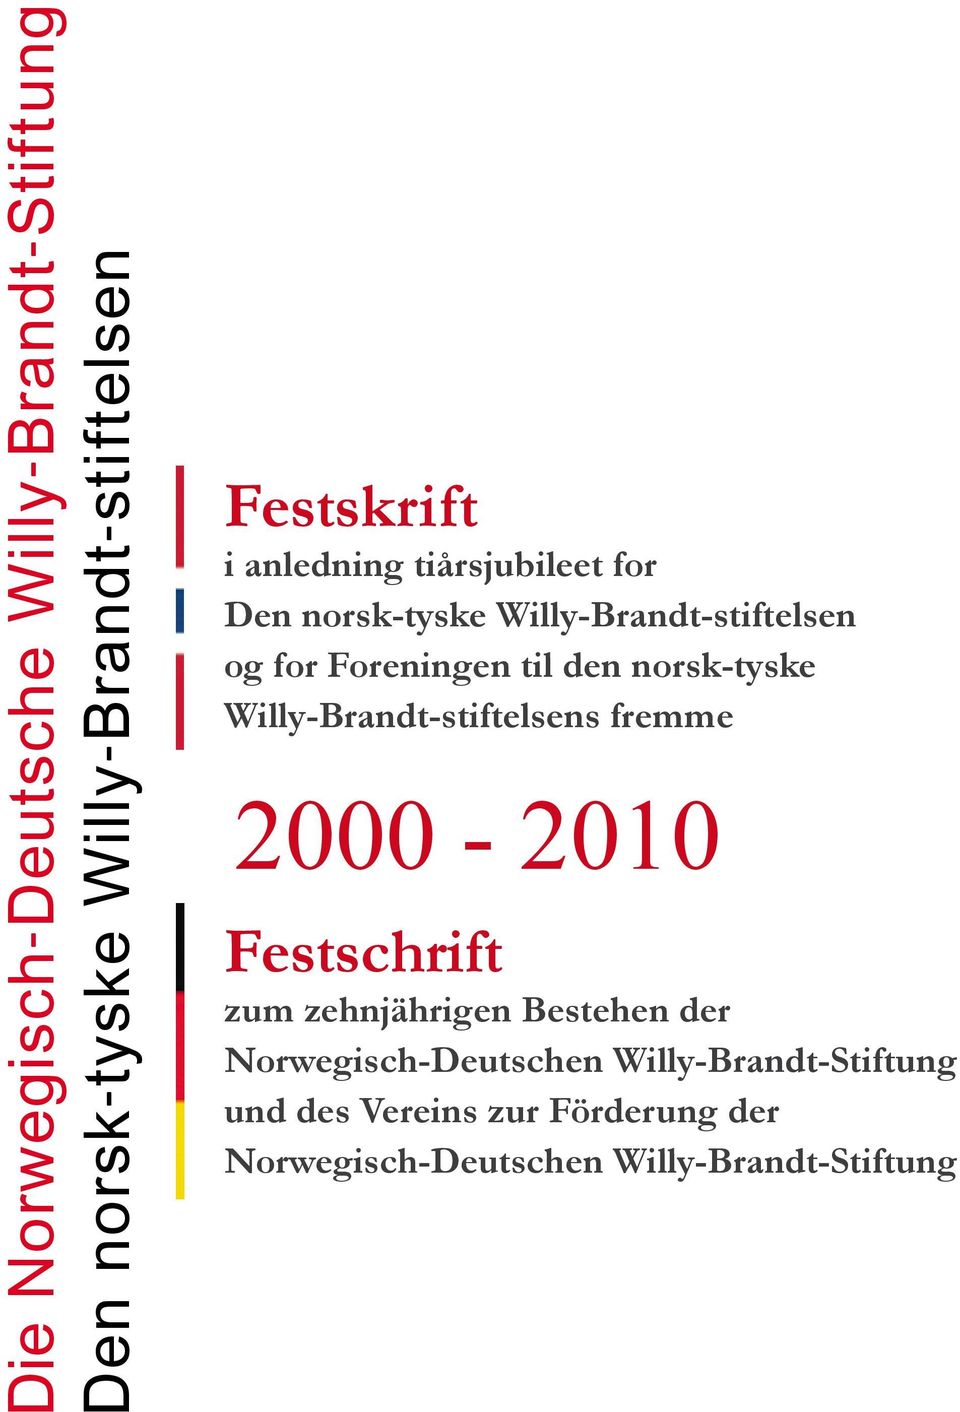 norsk-tyske Willy-Brandt-stiftelsens fremme 2000-2010 Festschrift zum zehnjährigen Bestehen der